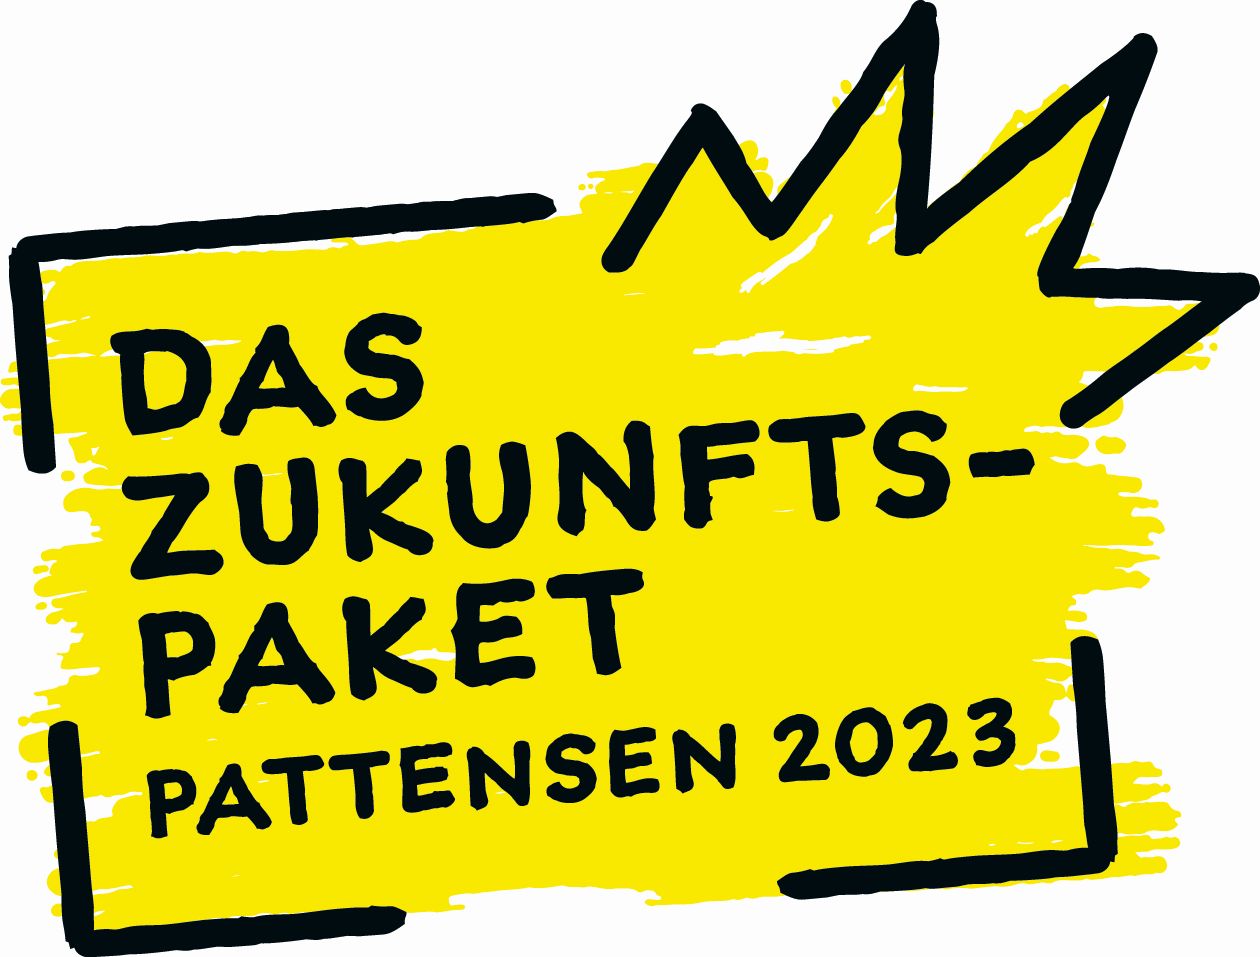 M DAS ZUKUNFTS- PAKET PATTENSEN 202